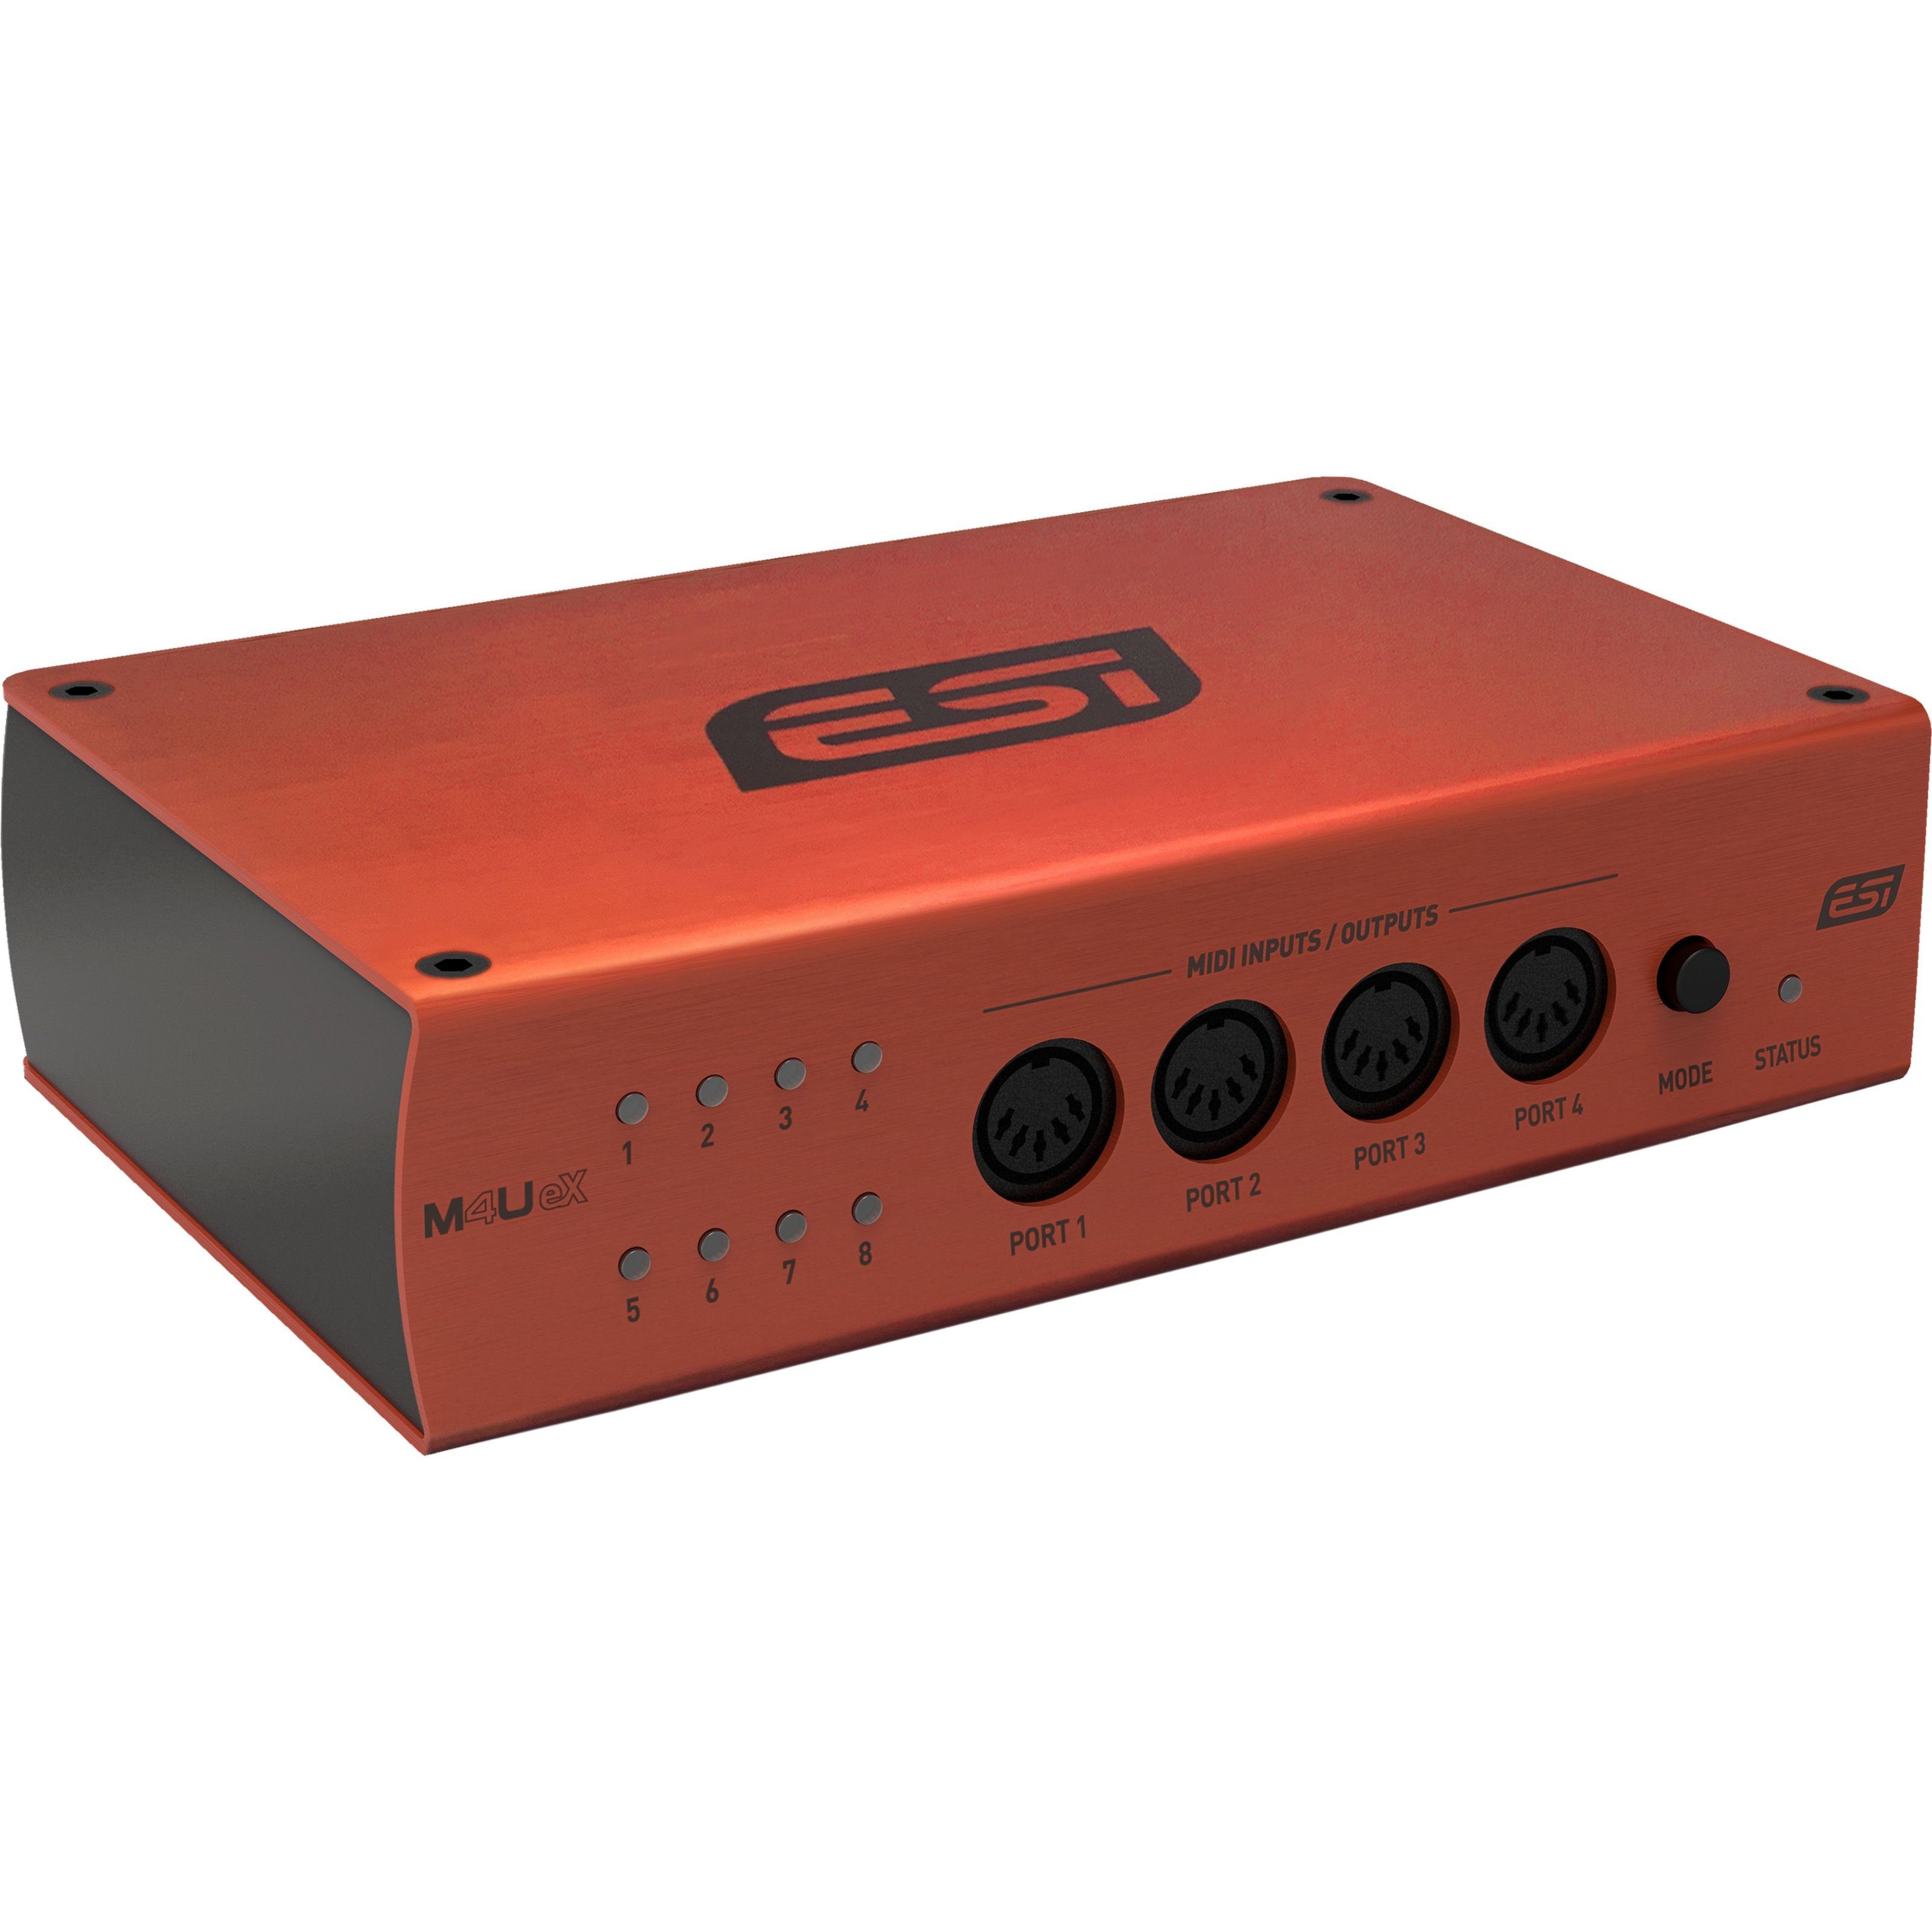 ESI Digitales Aufnahmegerät (M4U eX 8 Port USB 3 MIDI-Interface - MIDI Interface)